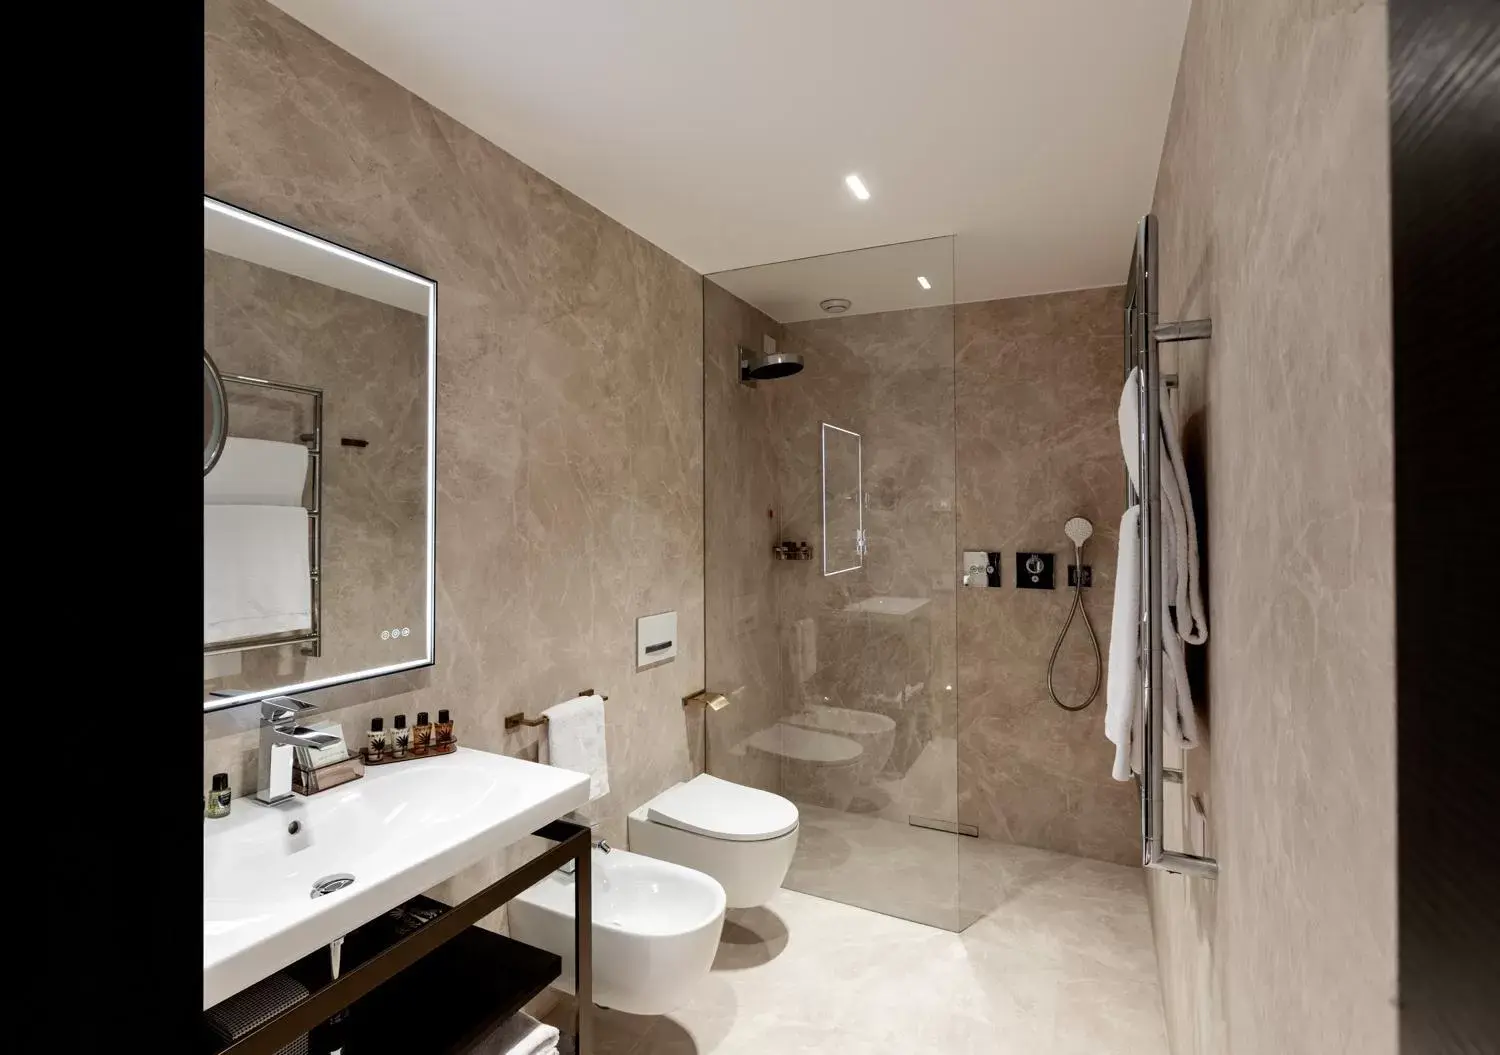 Bathroom in Ceccarini 9 home suite home